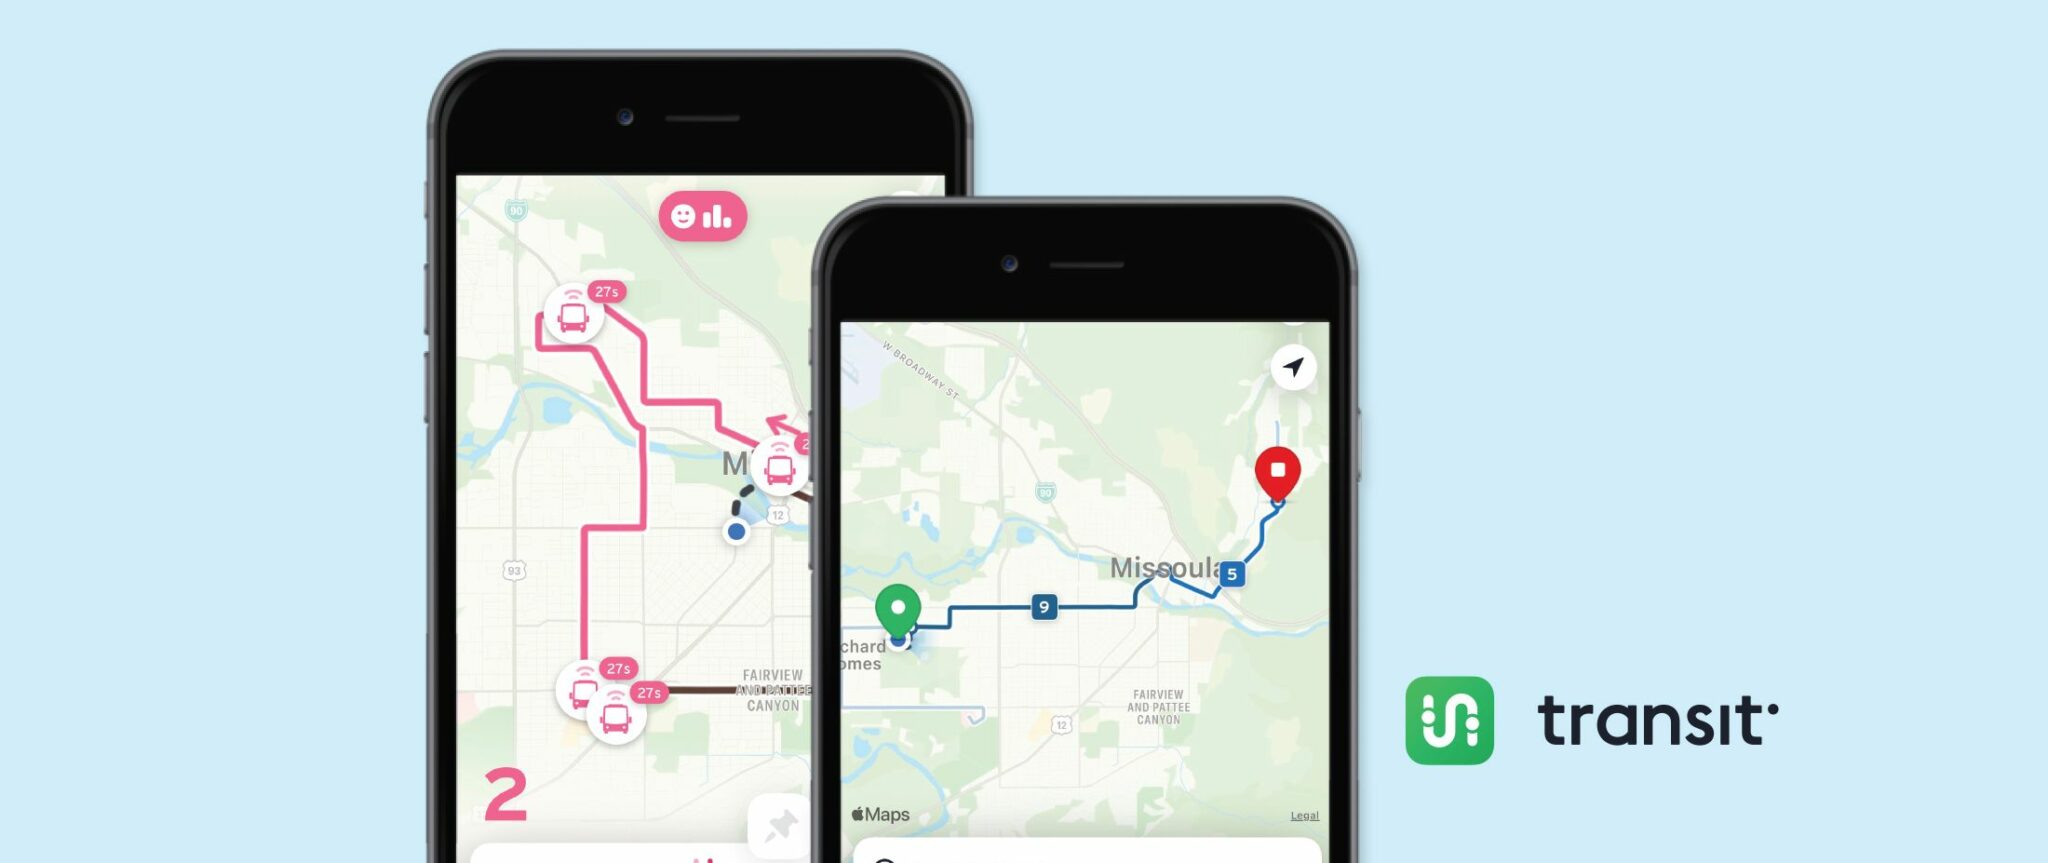 image of transit app map